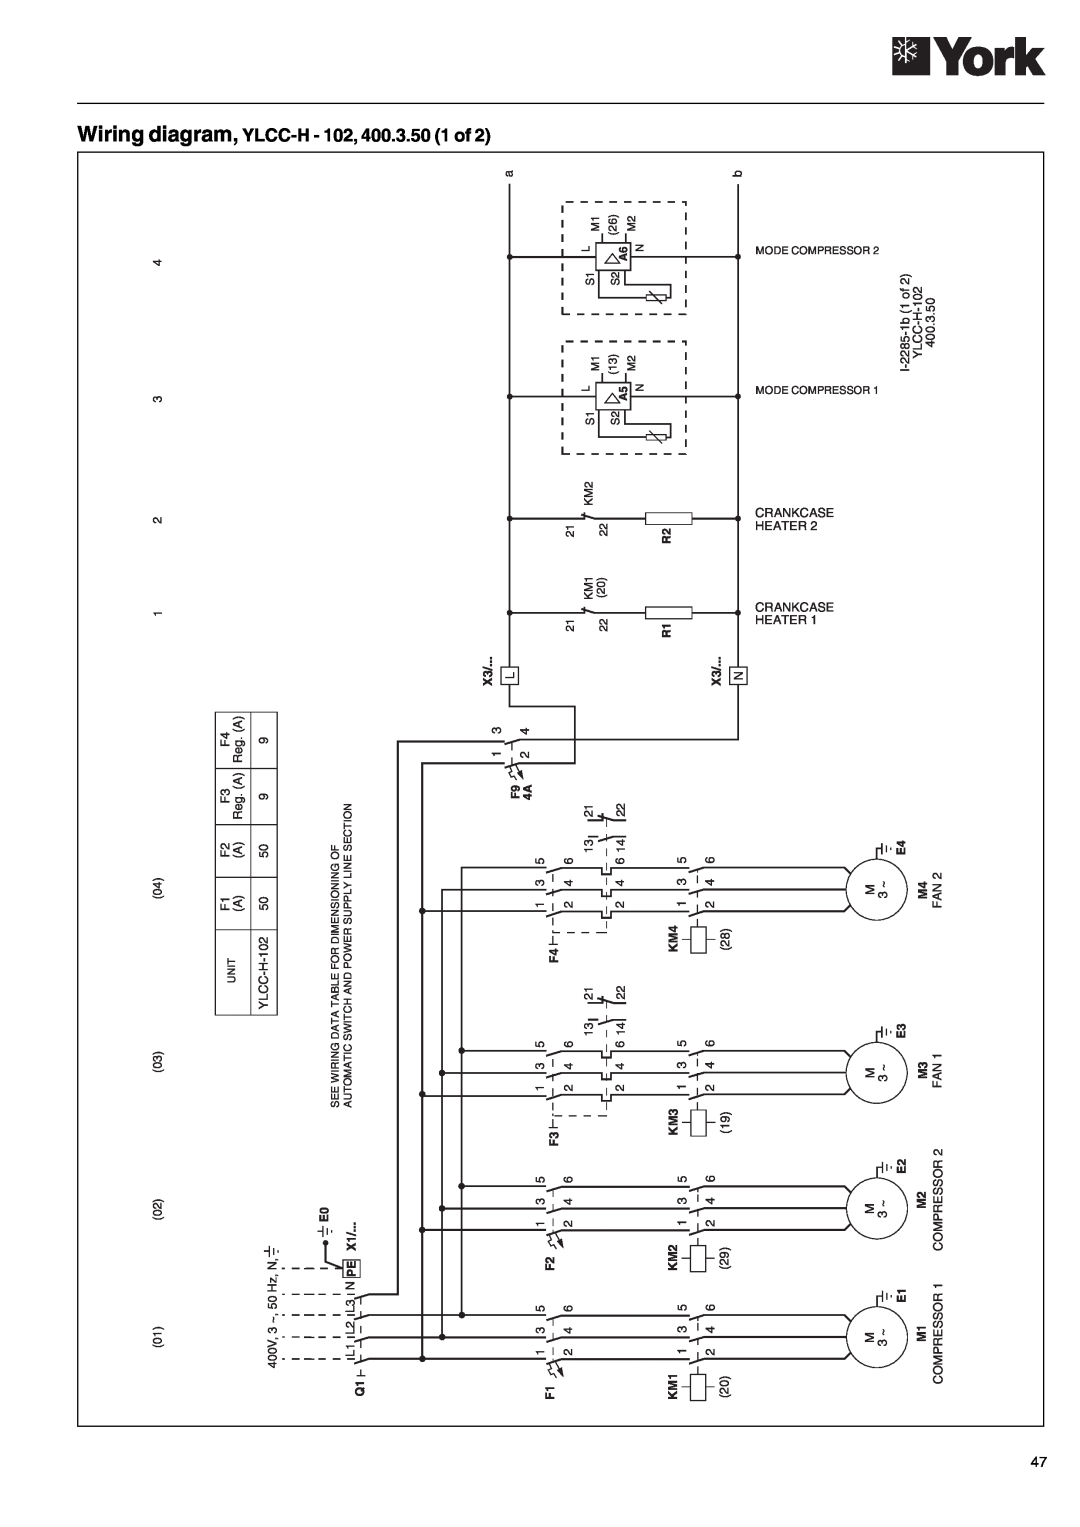 York 152, YLCC 42/62/82/102/112, YLCC-h, 122 manual Wiring diagram, YLCC-H- 102, 400.3.50 1 of 